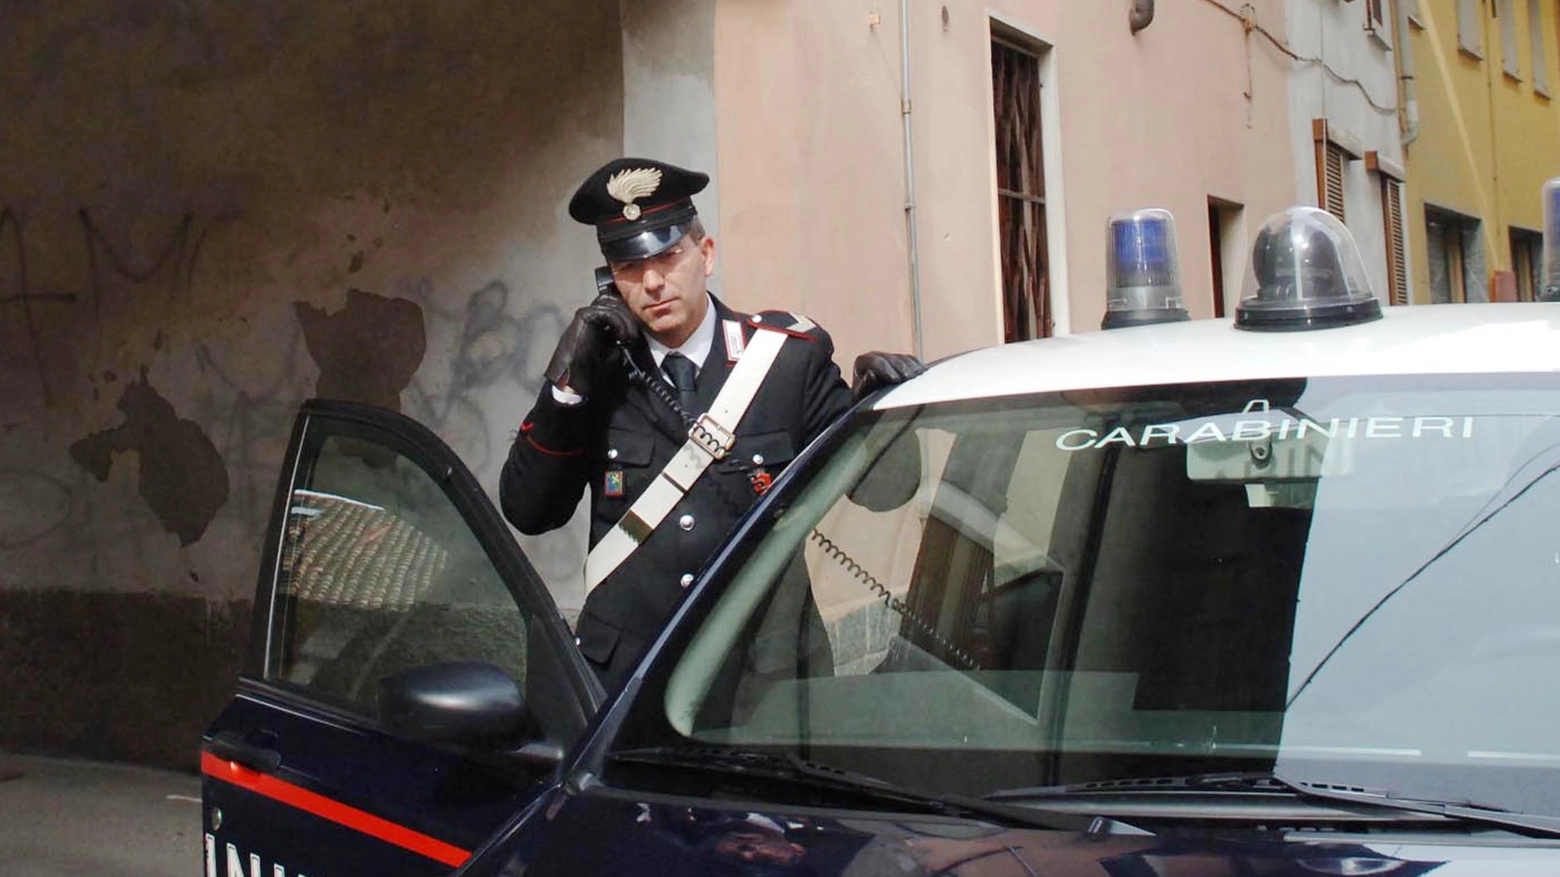 L'uomo ha denunciato l'aggressione ai carabinieri